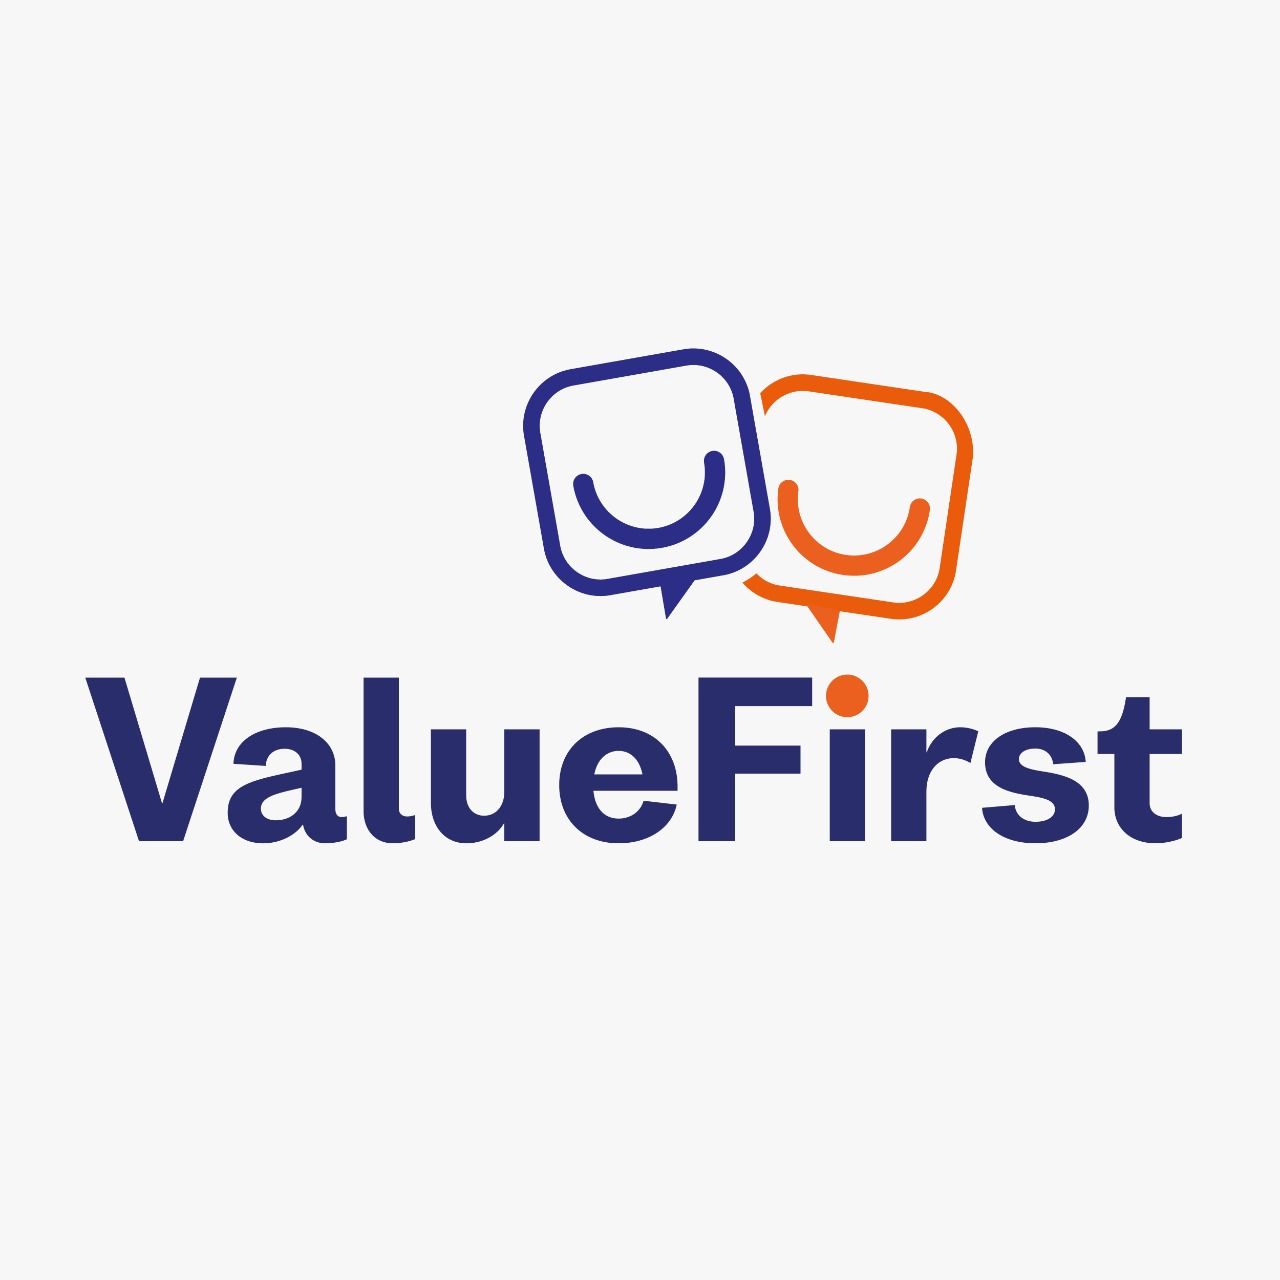 ValueFirst Digital Media